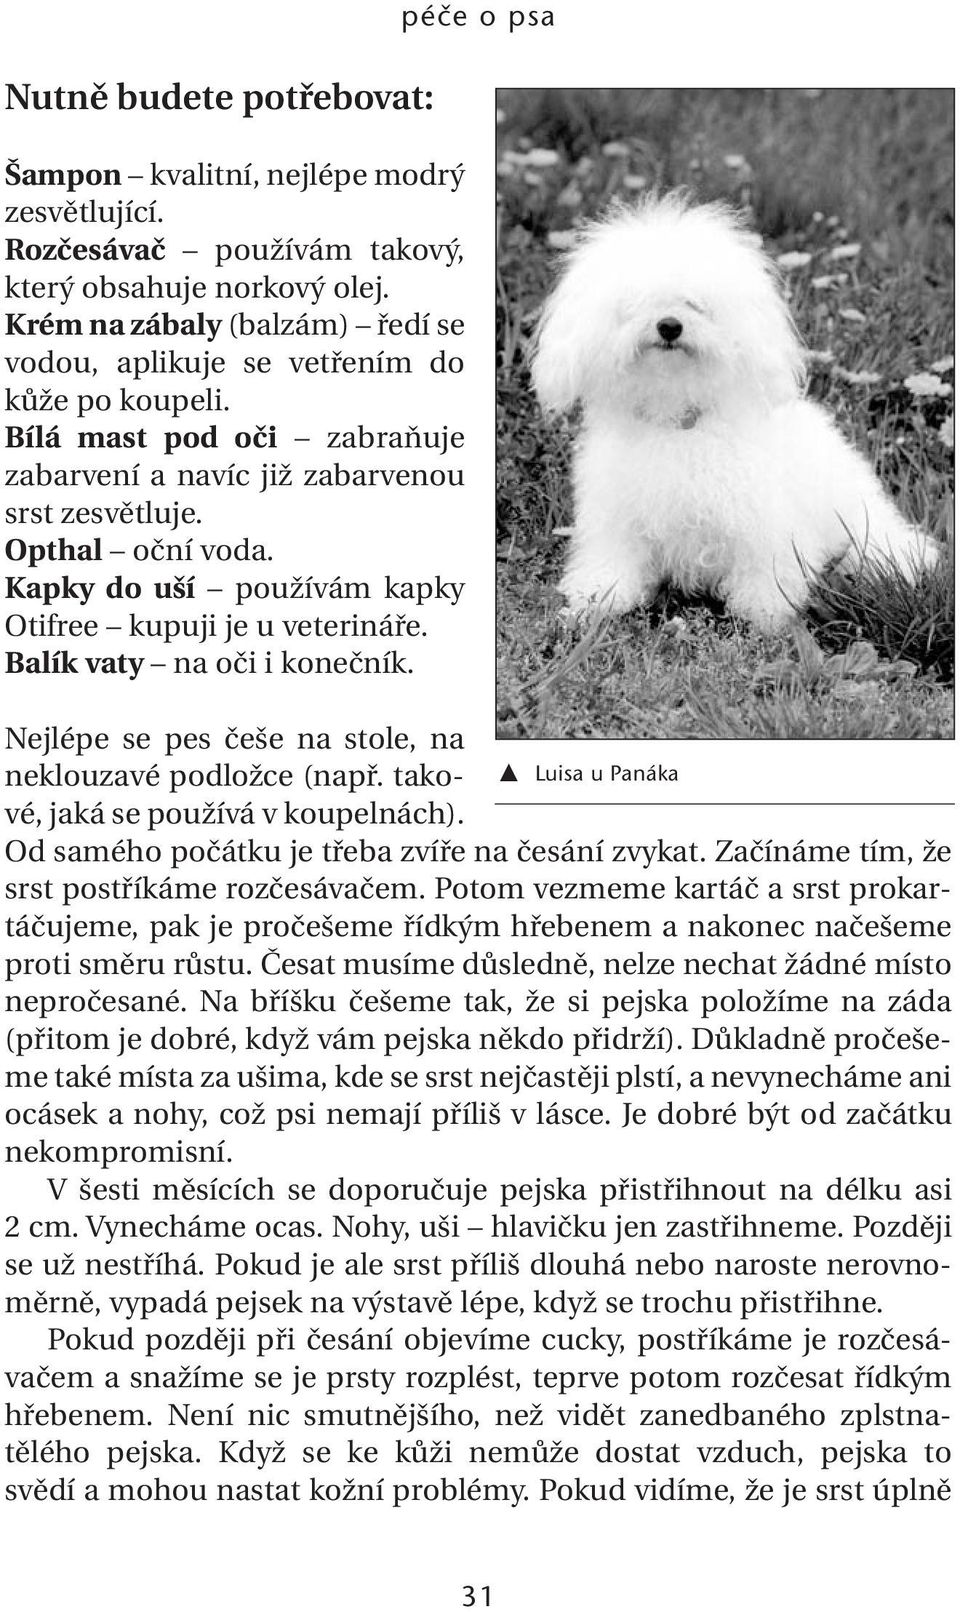 Péče o psa. Problém s čistotou - PDF Free Download